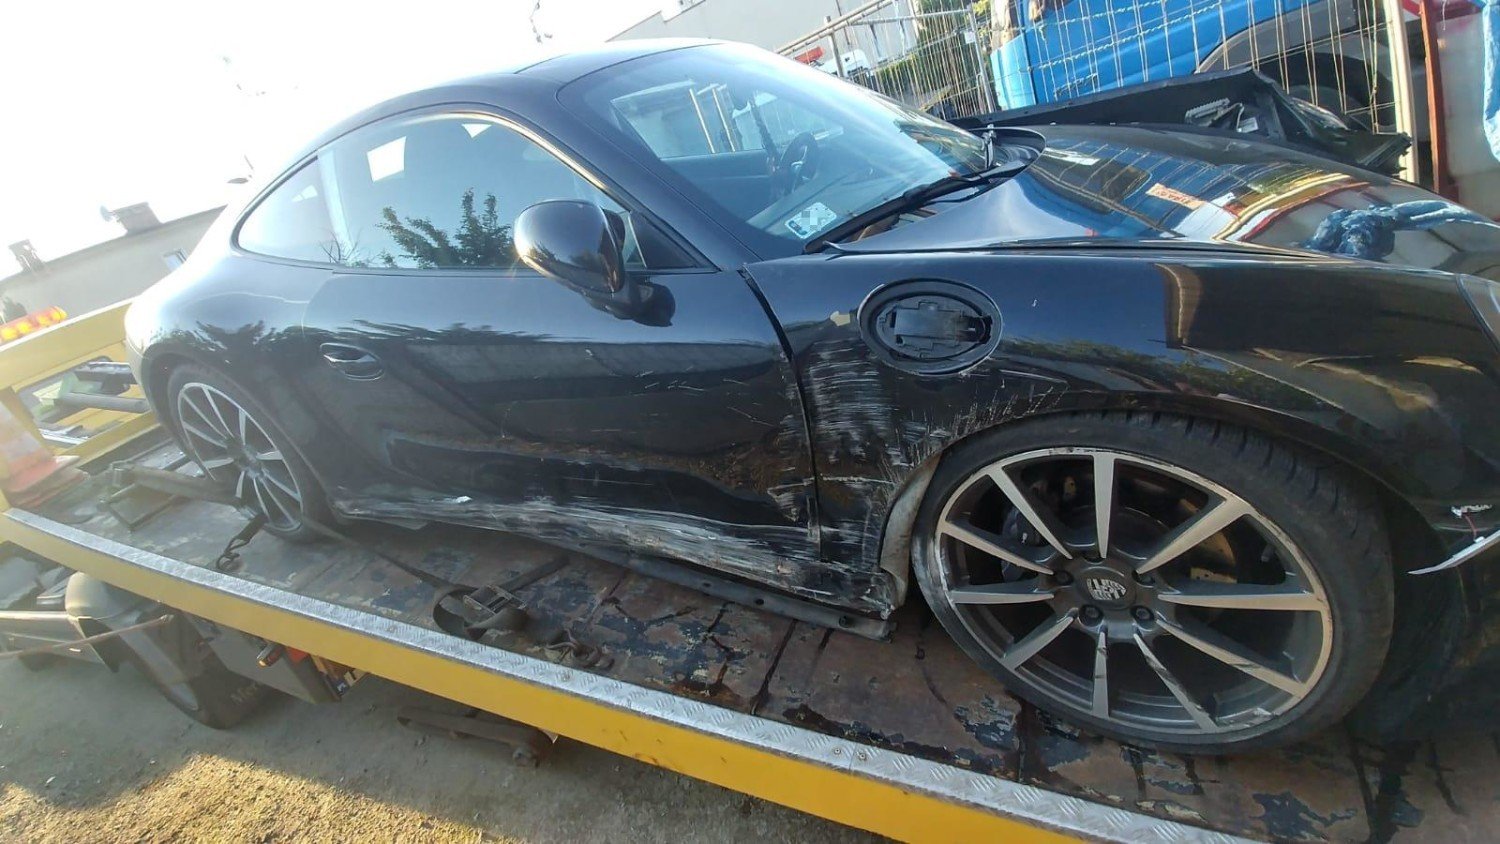 Pracownik myjni samochodowej w Kaliszu ukradł Porsche